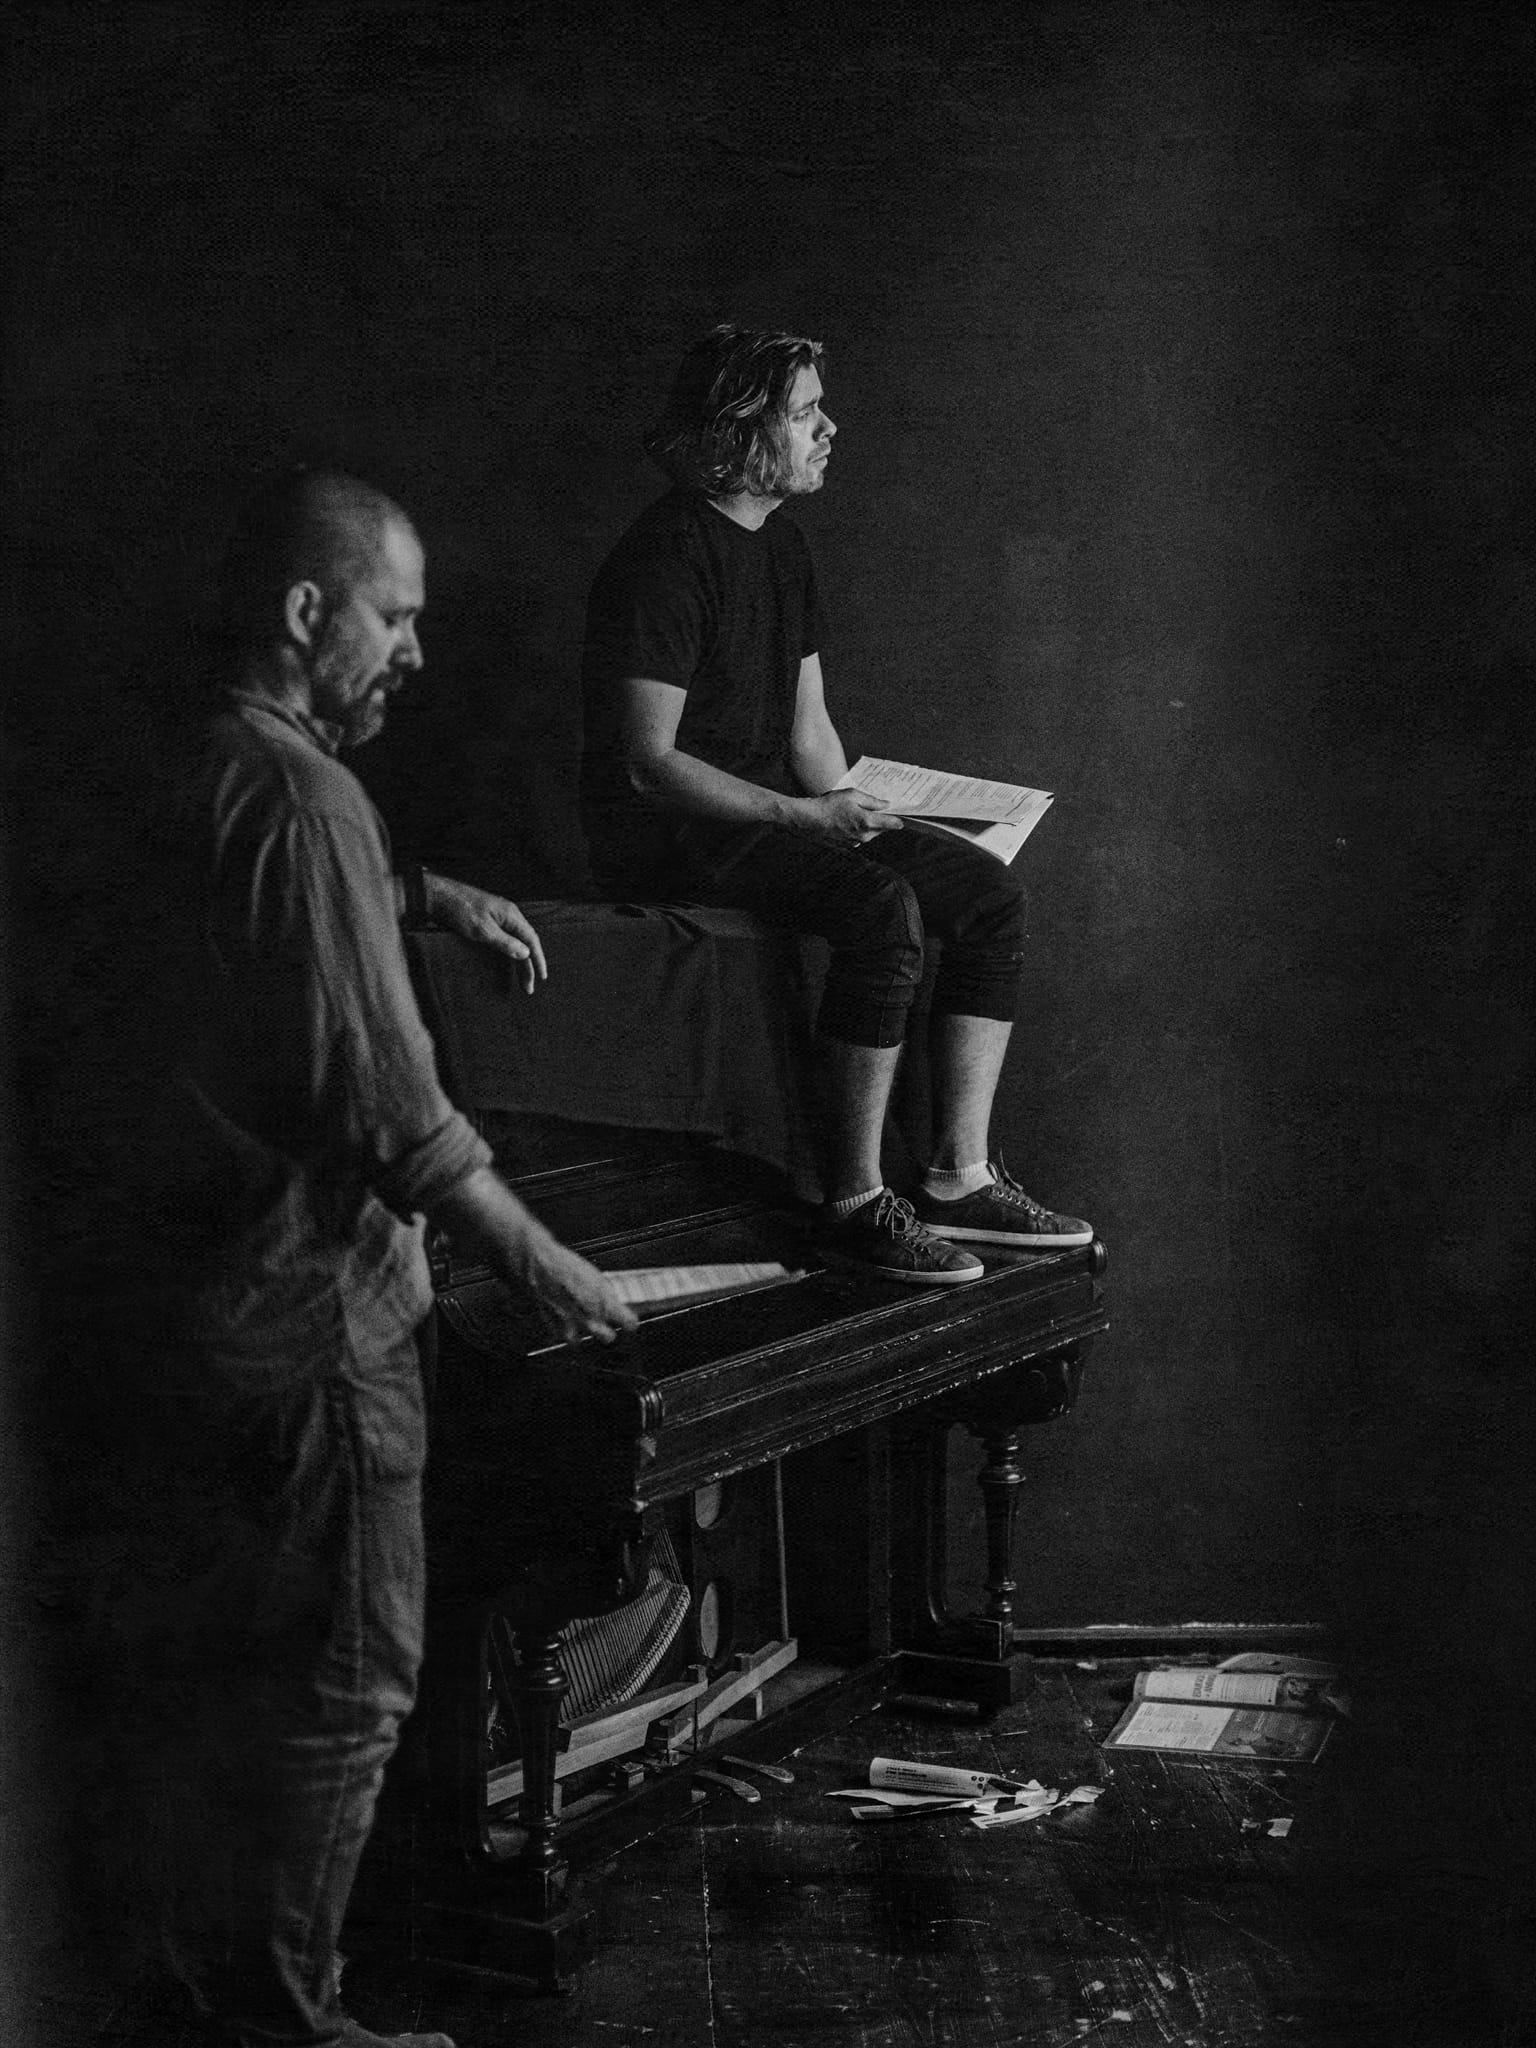 zdjęcei z próby, dwaj aktorzy na scenie, jeden klęczy przy pianinie, drugi stoi obok instrumentu